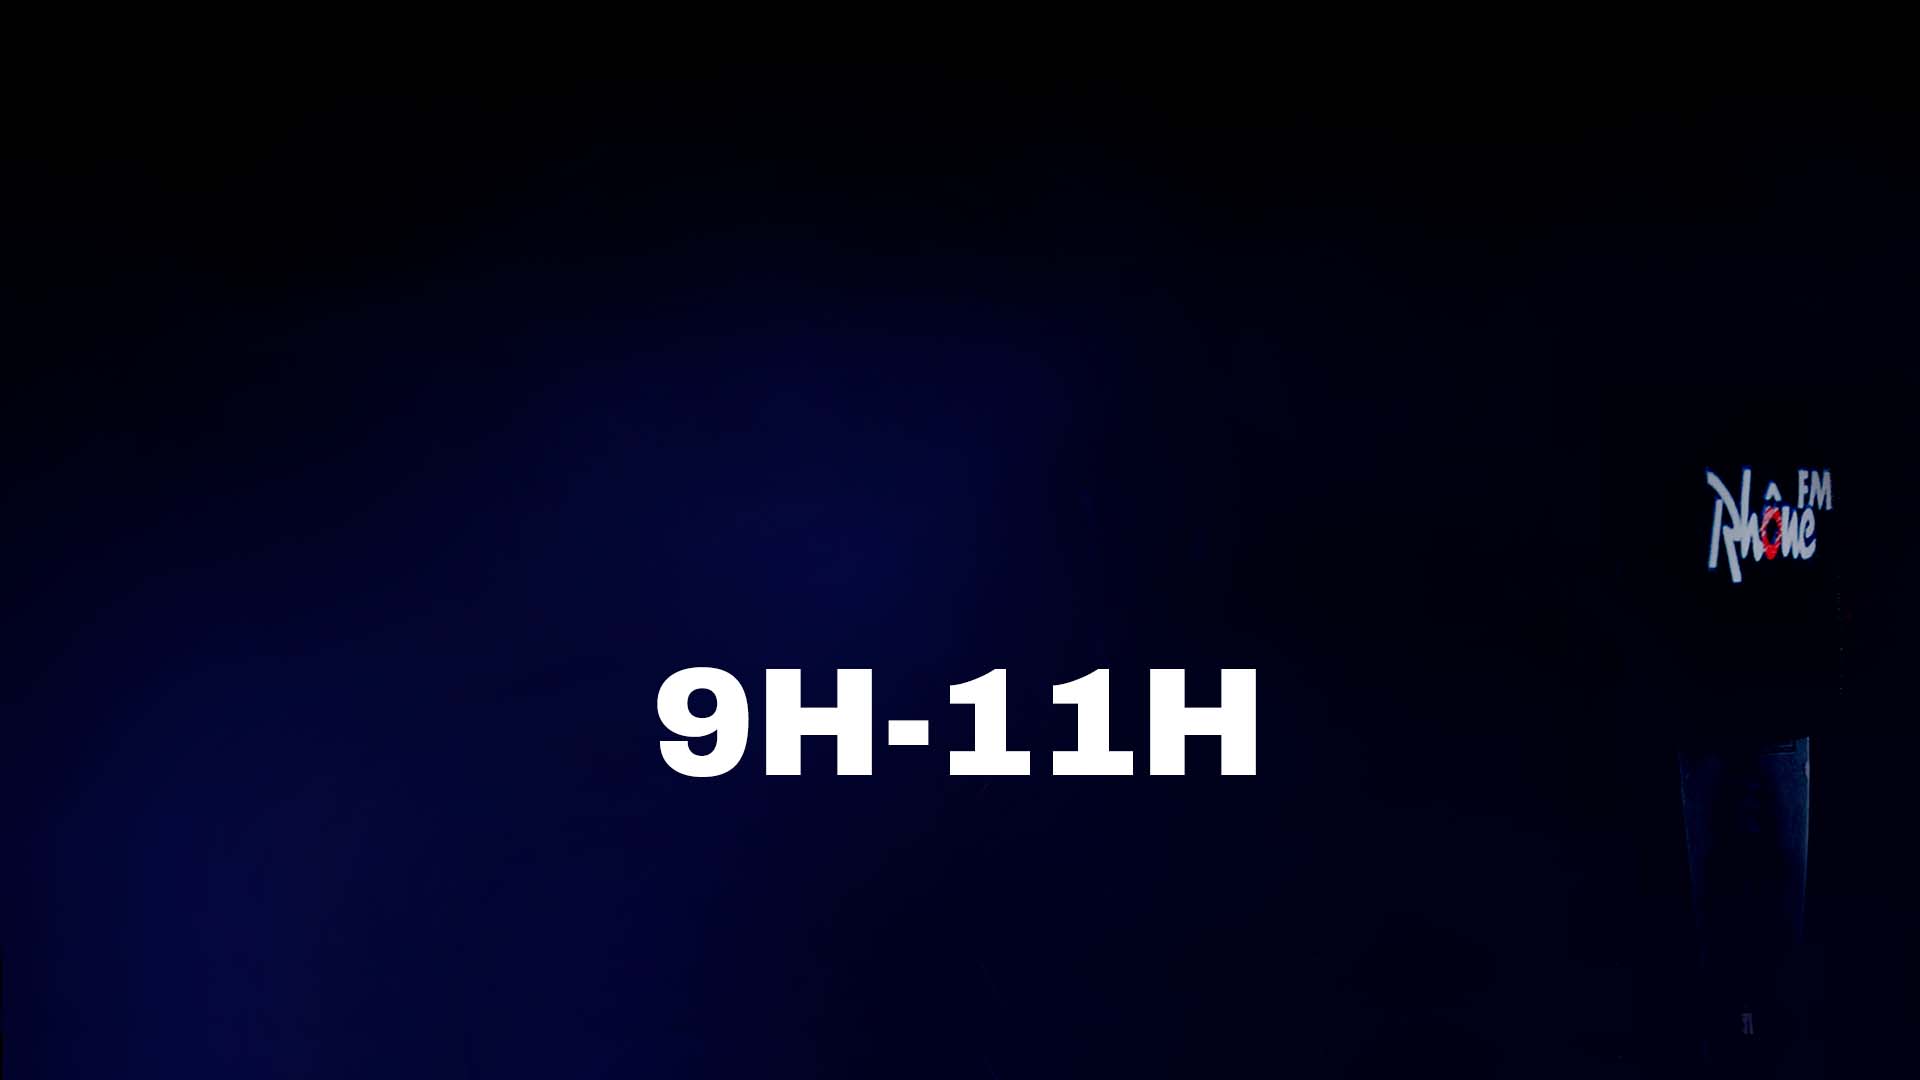 9h - 11h